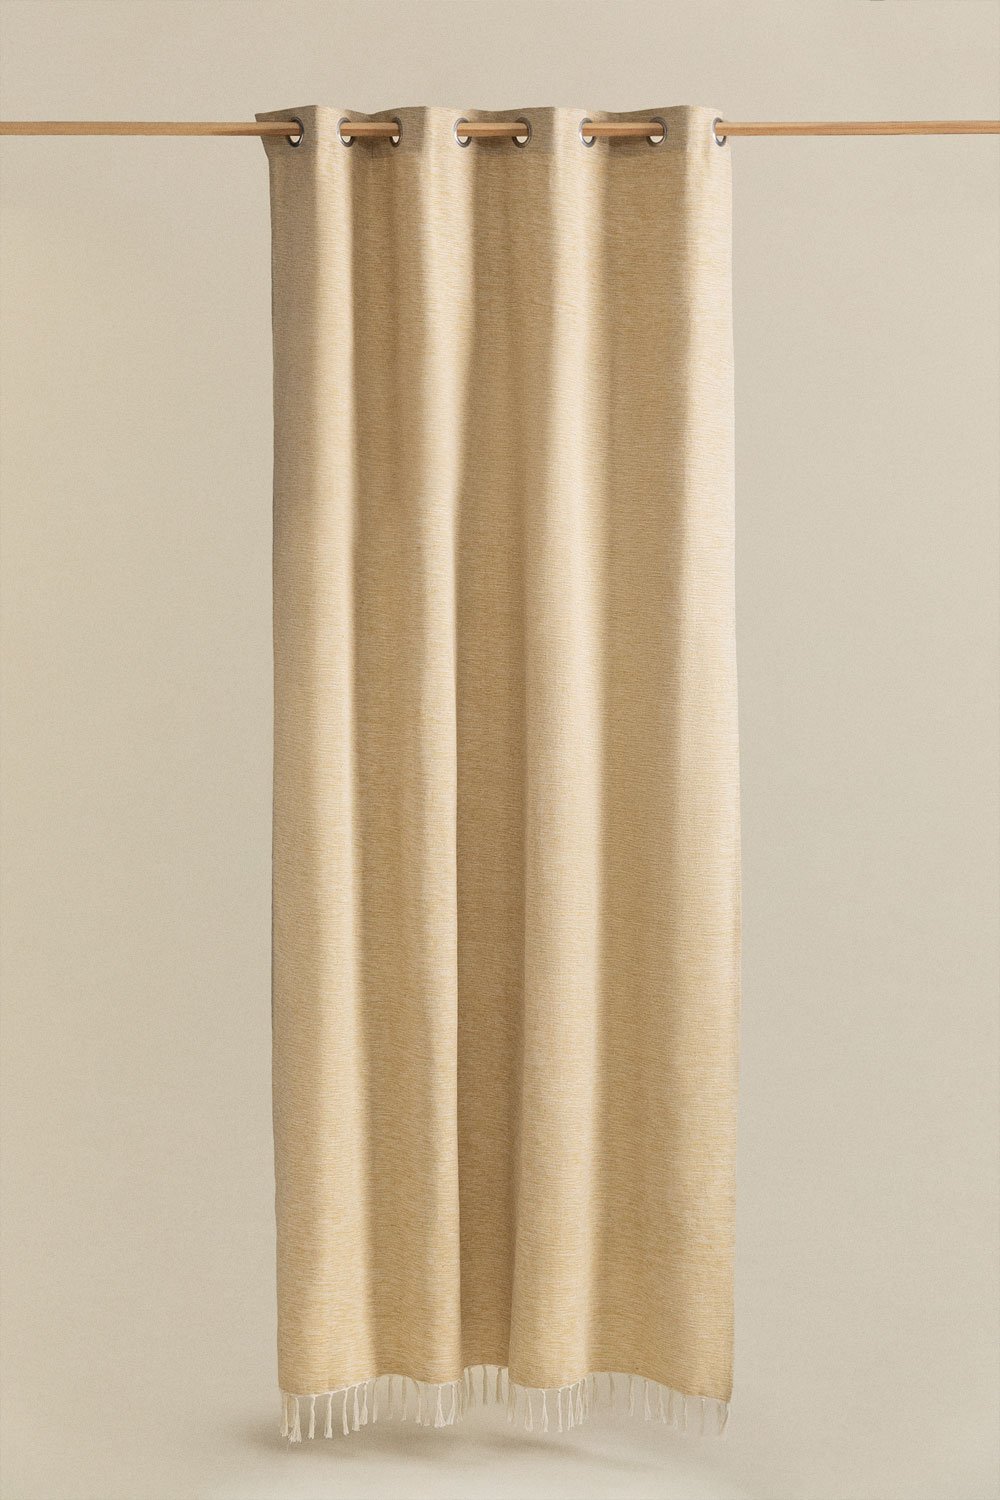 Tenda in cotone (140x260 cm) Manami, immagine della galleria 1